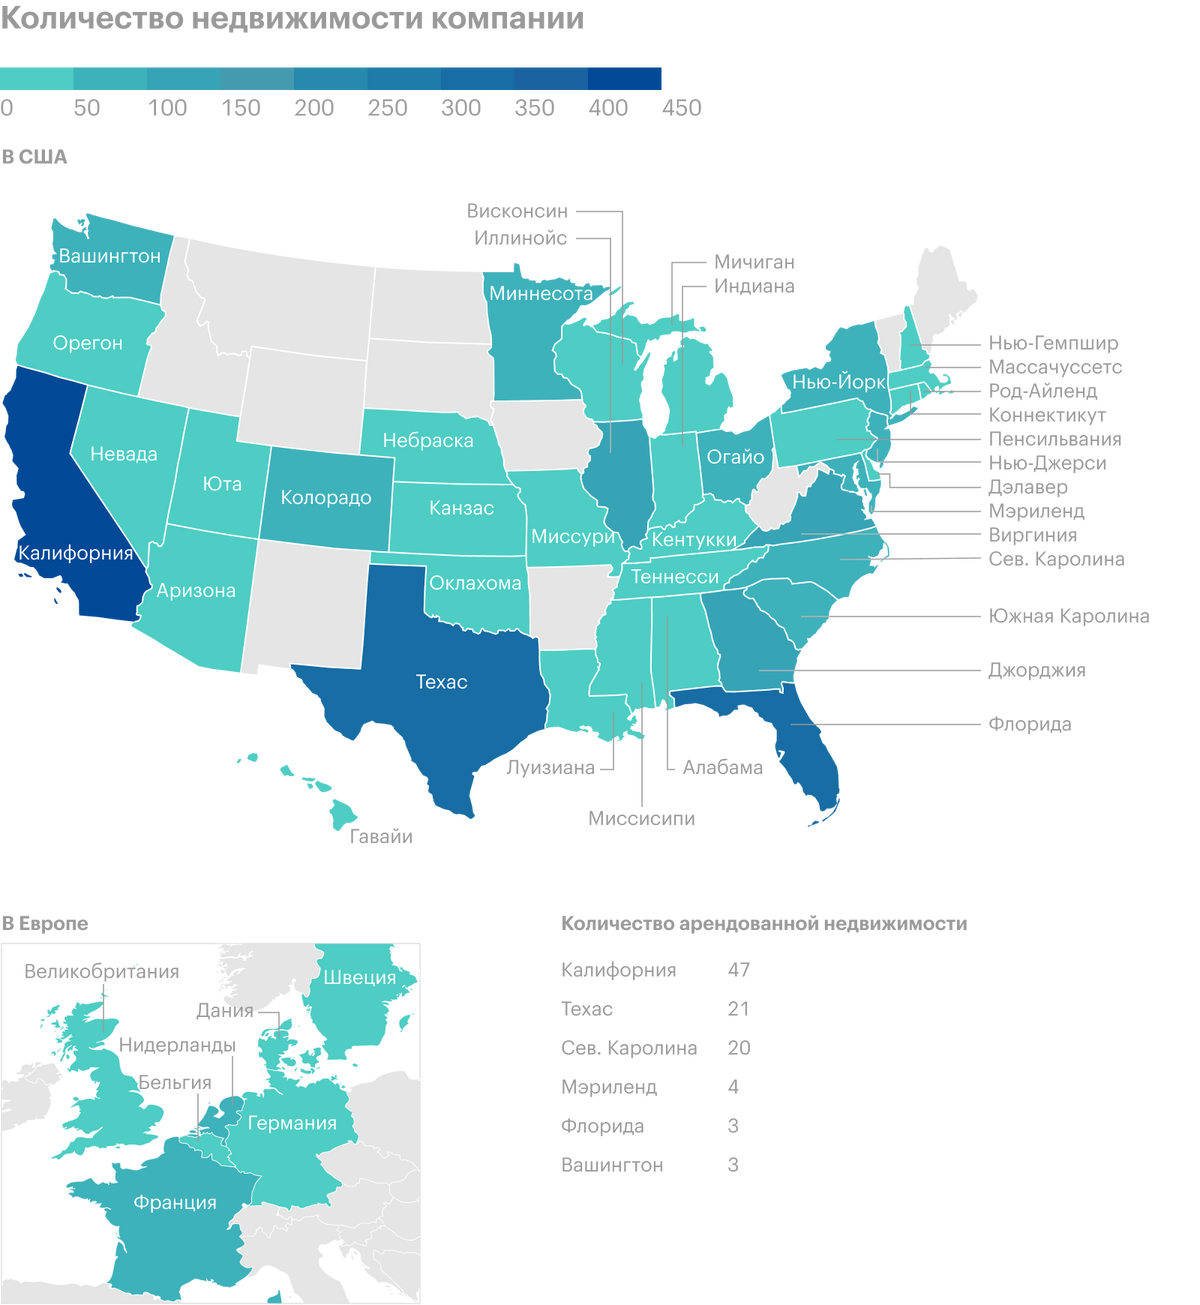 Объекты недвижимости компании в разных штатах США и странах Европы. Источник: годовой отчет компании, стр.&nbsp;0&nbsp;(2)